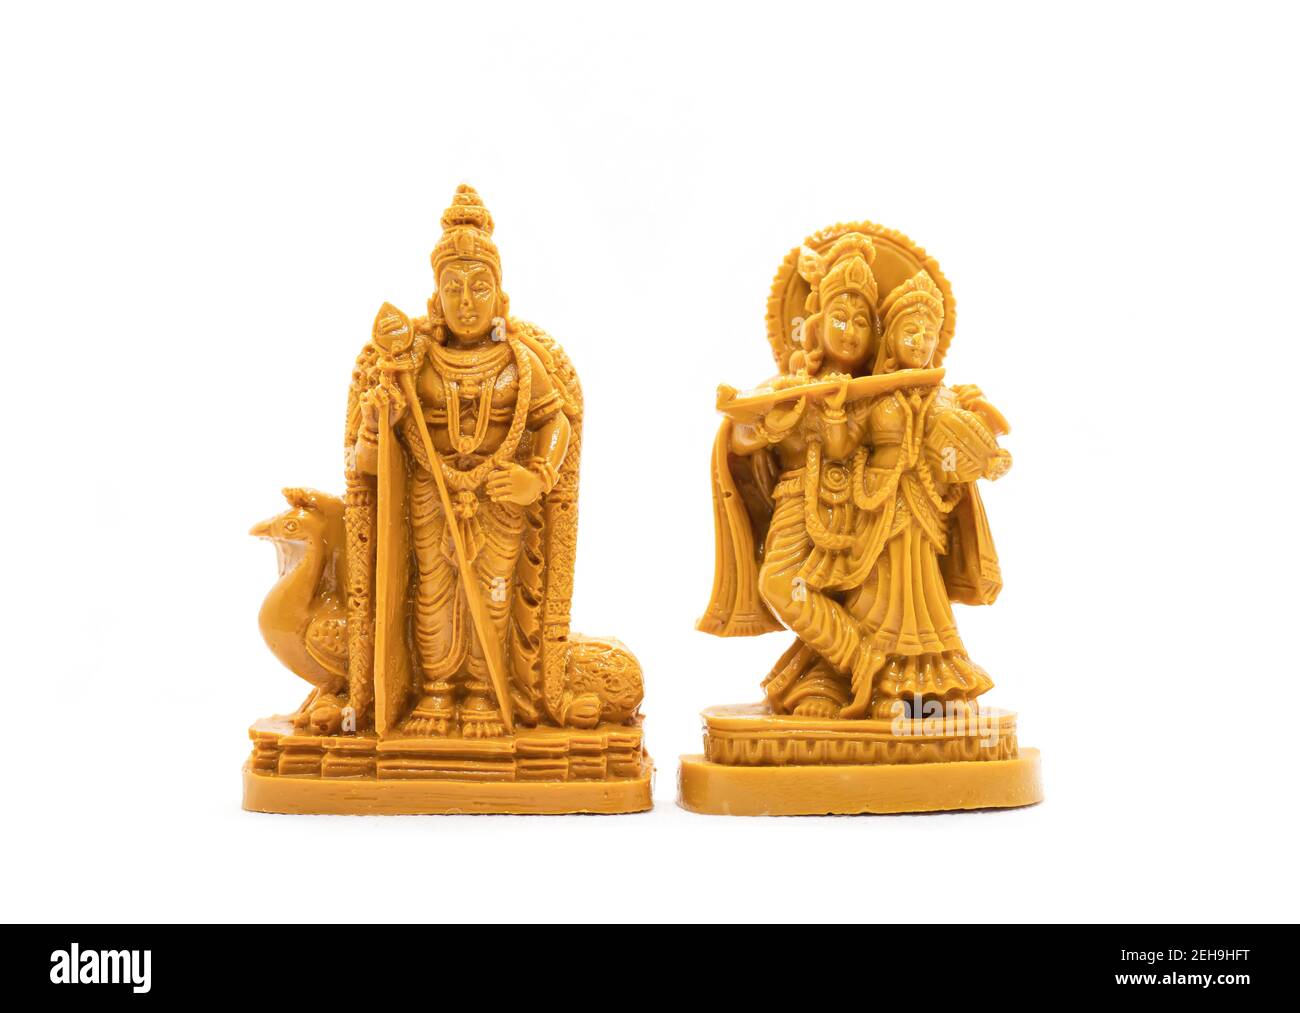 L'idolo in legno intagliato a mano di Lord Murugan con Radha Krishna è isolato su uno sfondo bianco Foto Stock